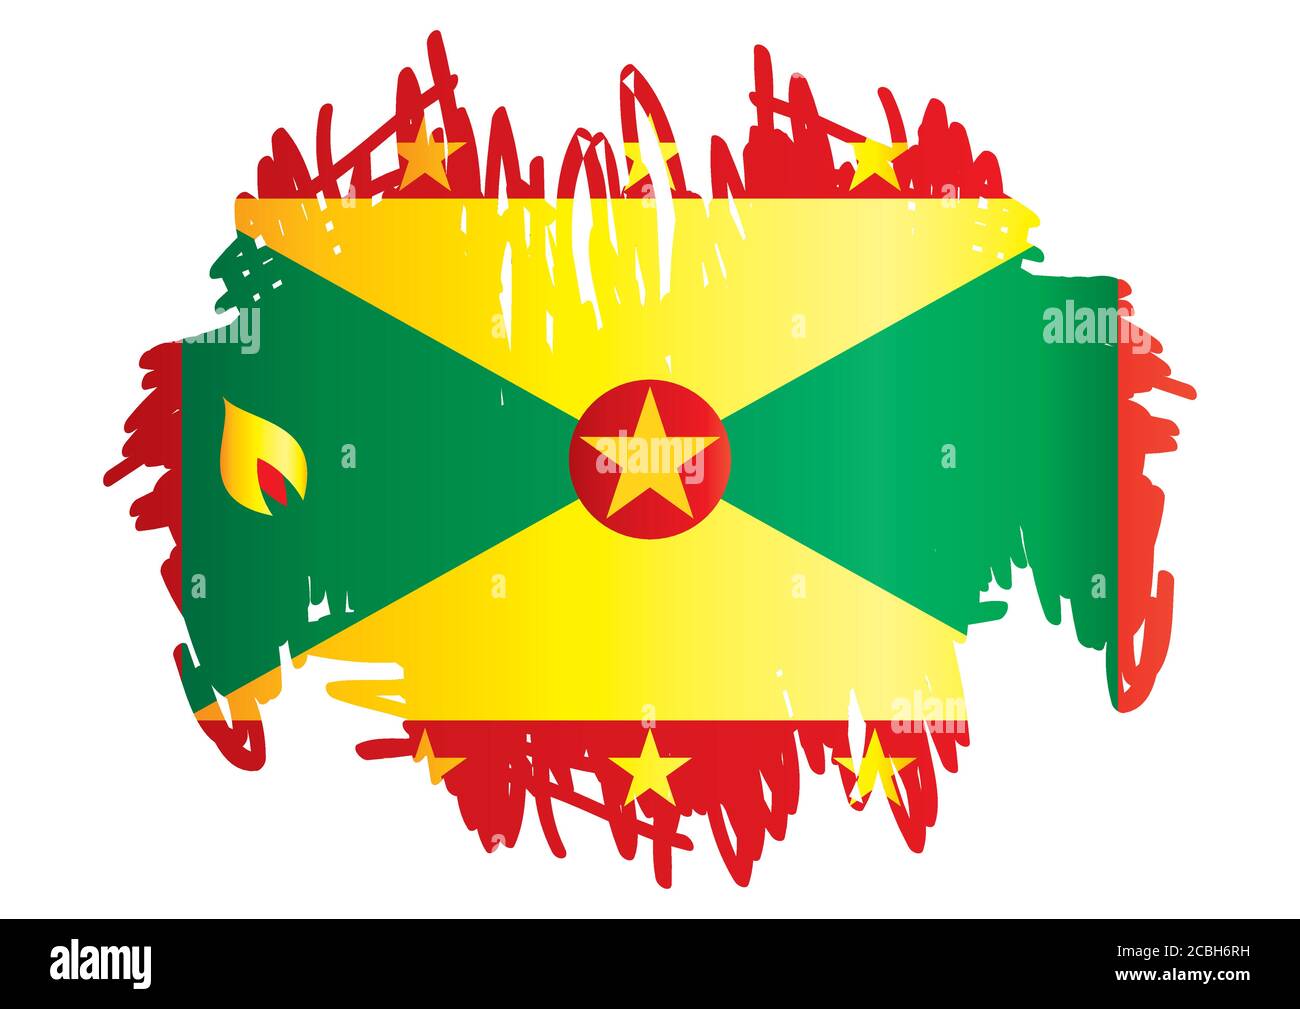 Drapeau de la Grenade, Grenade est un pays dans les Antilles, île d'épices. Modèle pour la conception de prix, un document officiel avec le drapeau de la Grenade. Illustration de Vecteur